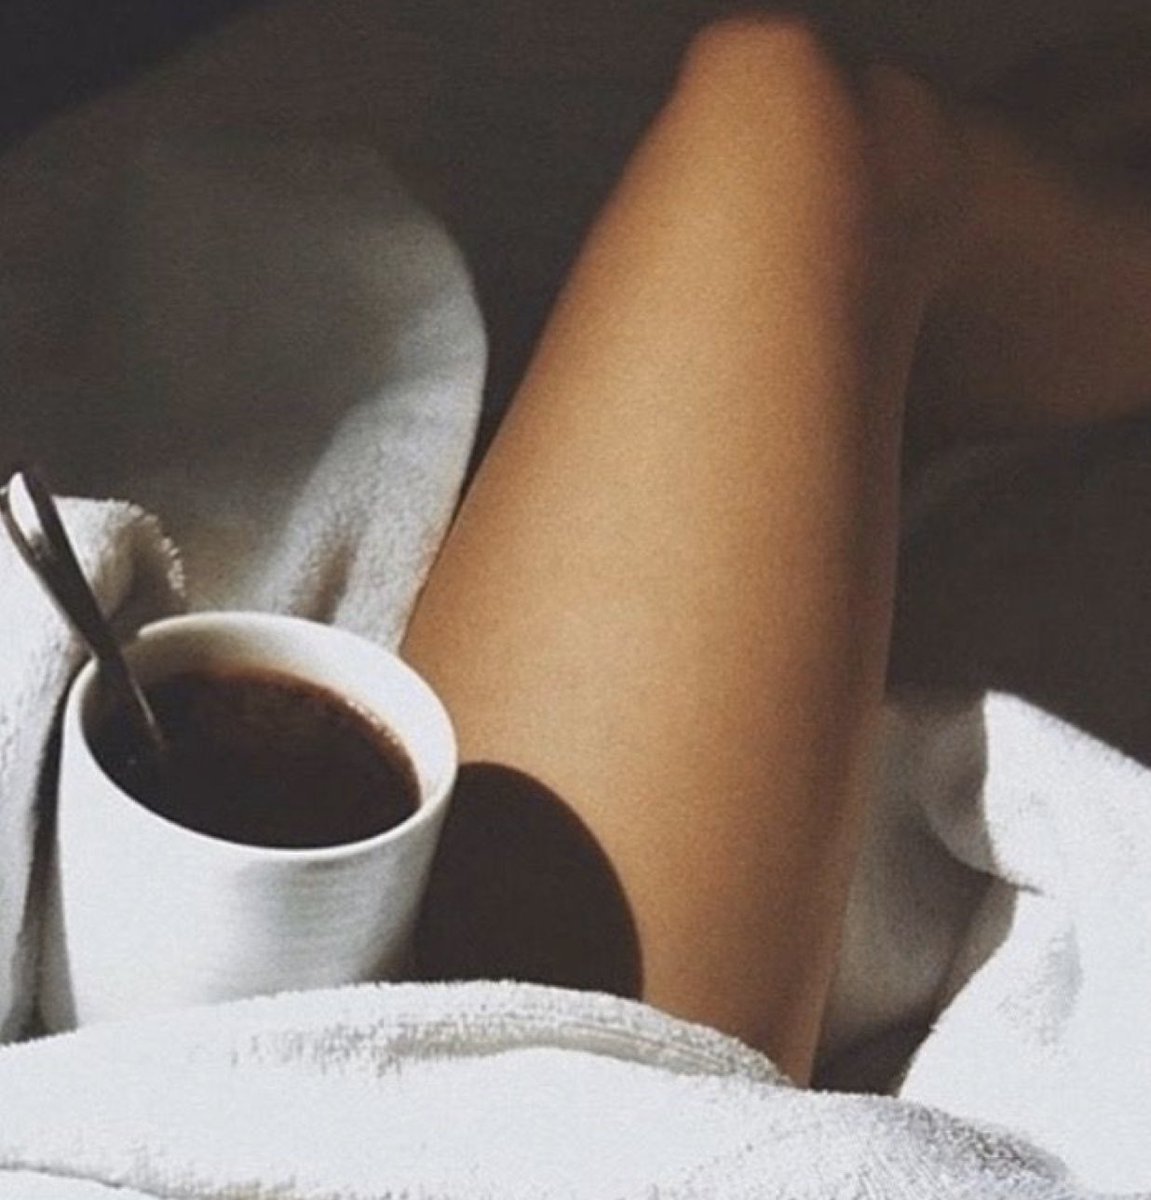 Порно утром хорошая зарядка и альтернатива чашке кофе или еде.